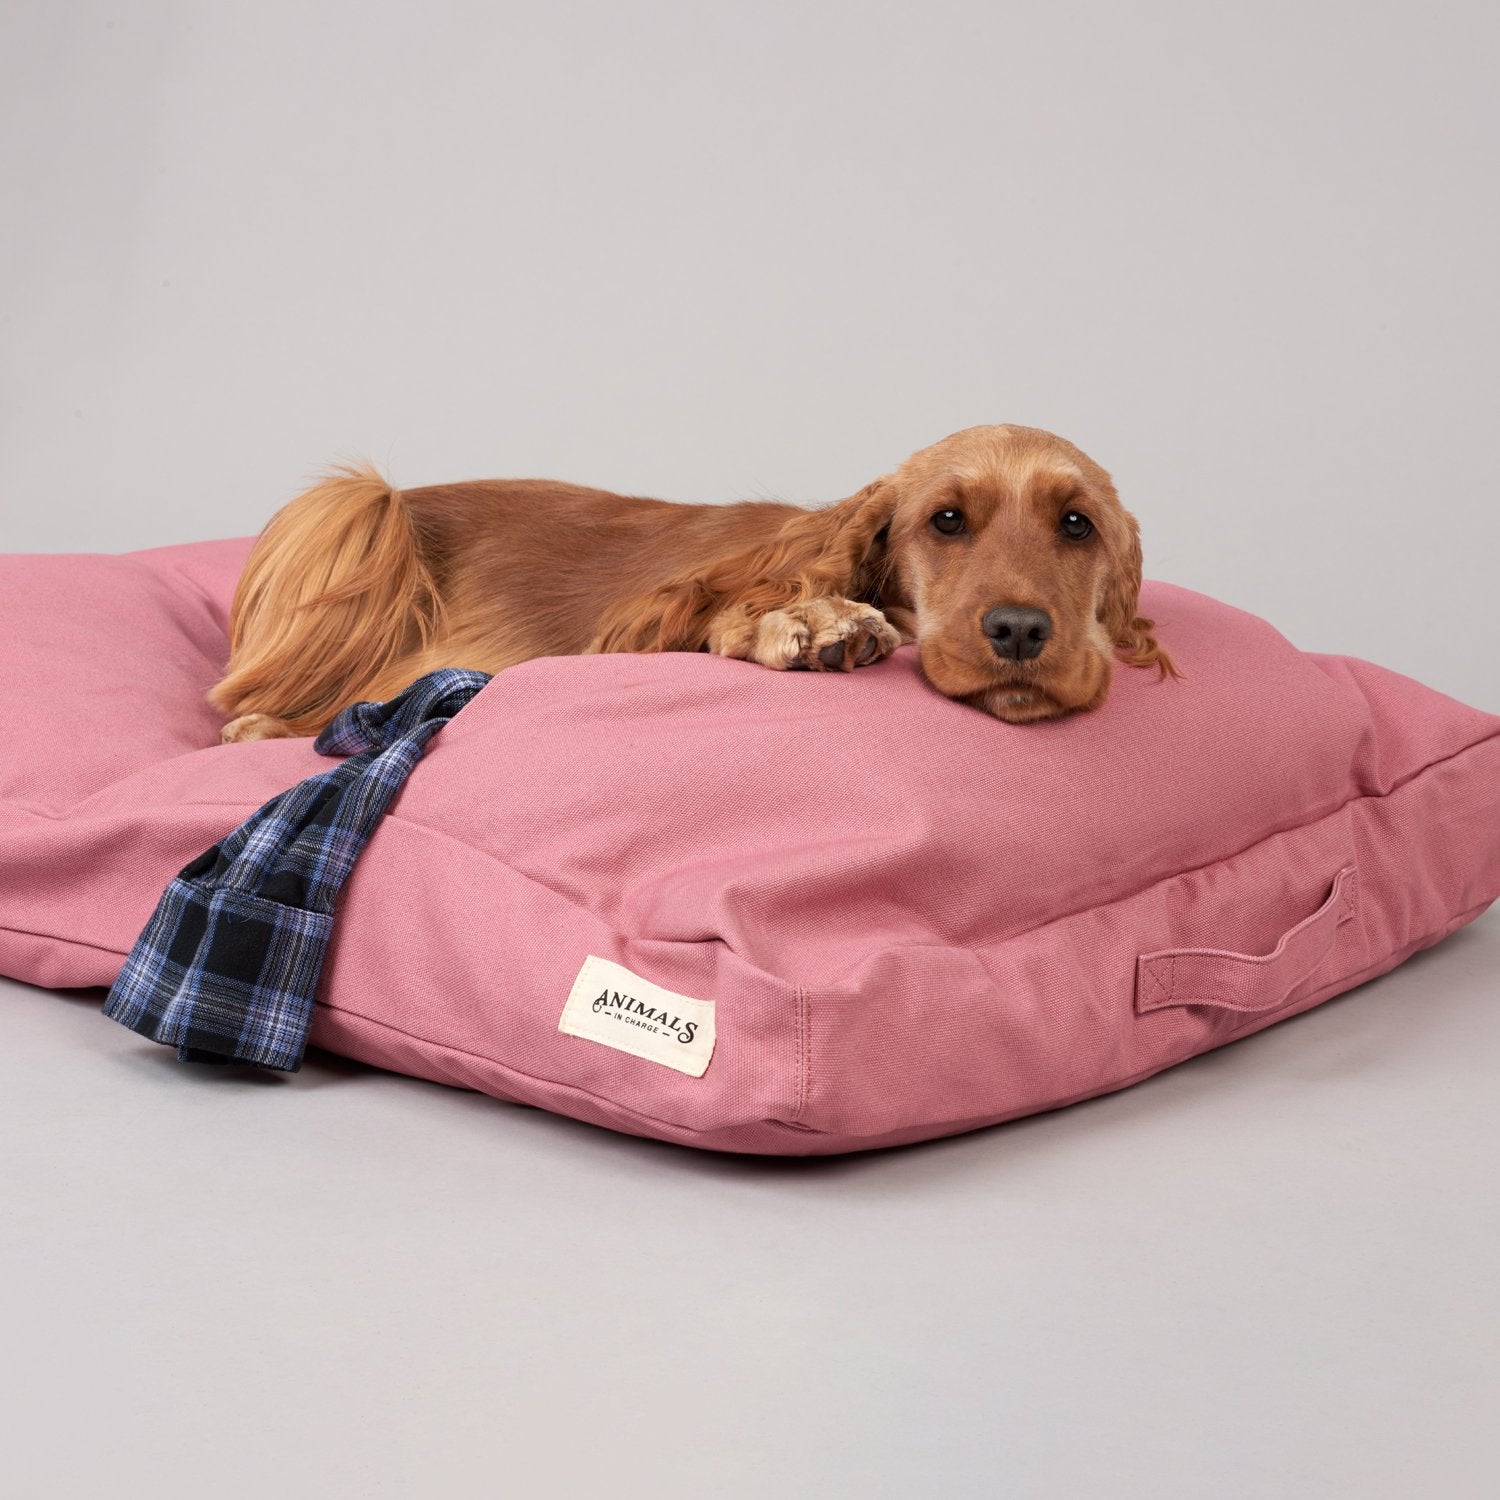 Plush Recycled Dog Beds - Banish